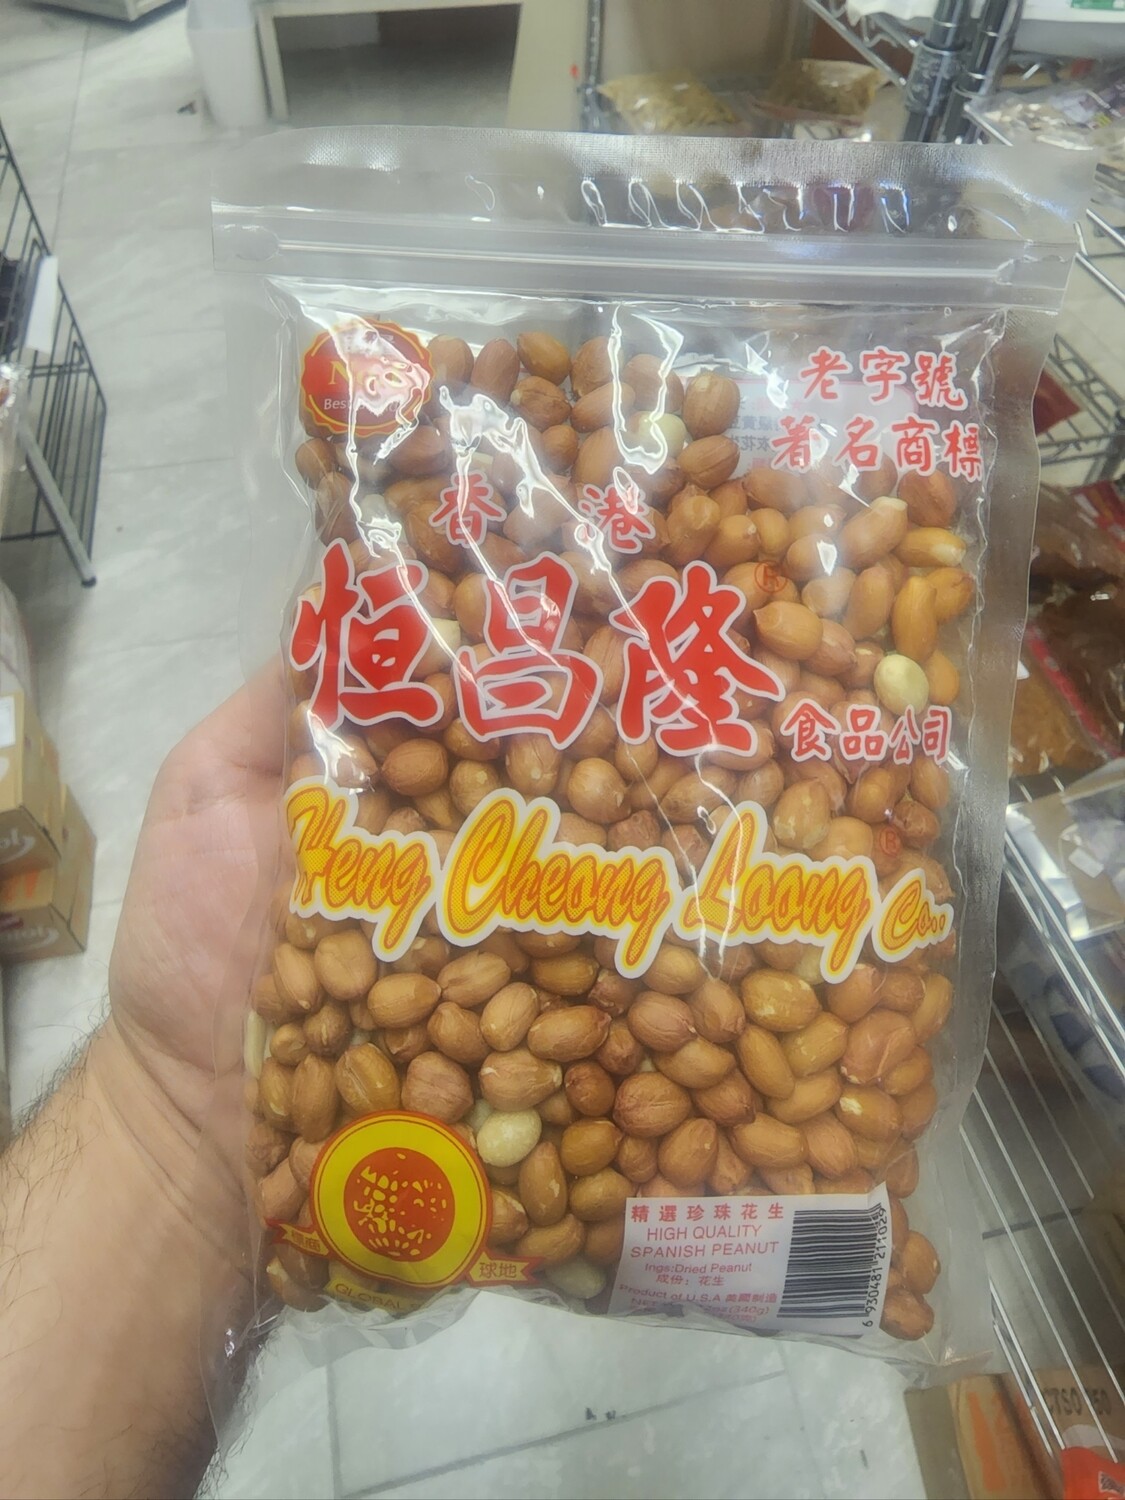 Raw Dried Peanuts Heng Cheong Loong 12 oz